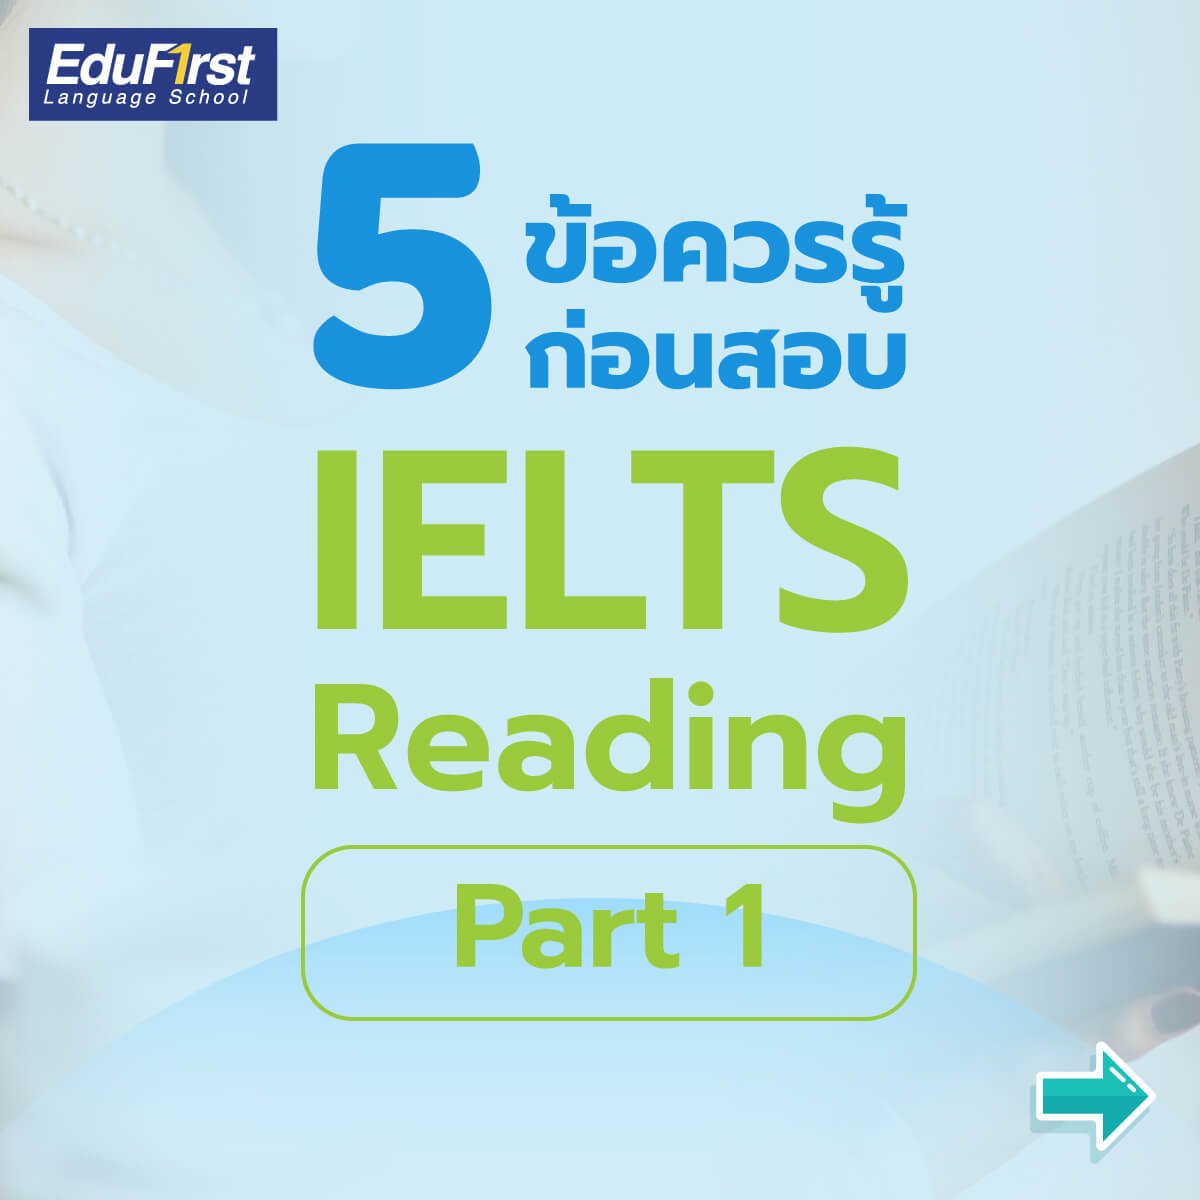 5 ข้อควรรู้ก่อนสอบ IELTS Reading เพื่อพัฒนาทักษะการอ่านของคุณ ได้อย่างรวดเร็วและครอบคลุม ในวันสอบ IELTS ติว ไอ เอ ล สถาบัน เรียนภาษาอังกฤษ EduFirst